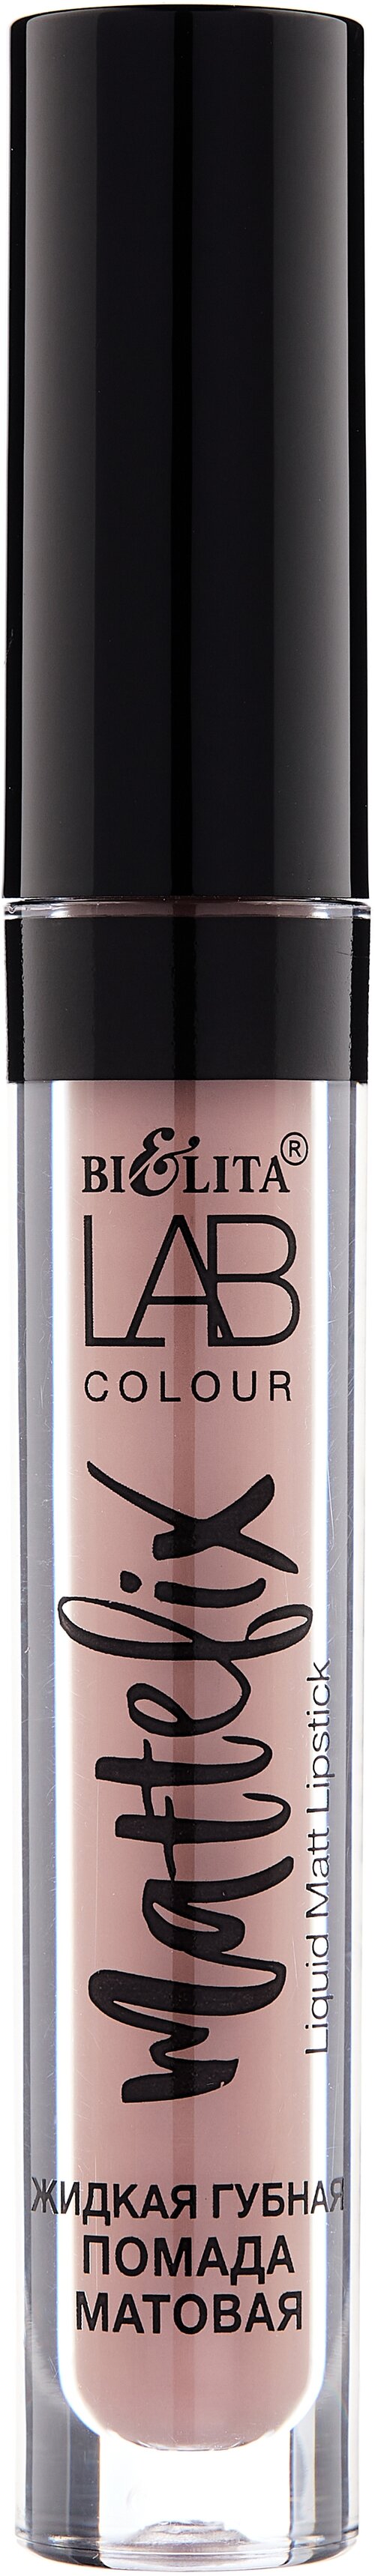 Bielita LAB colour жидкая губная помада MATTEFIX, оттенок 301 rose beige